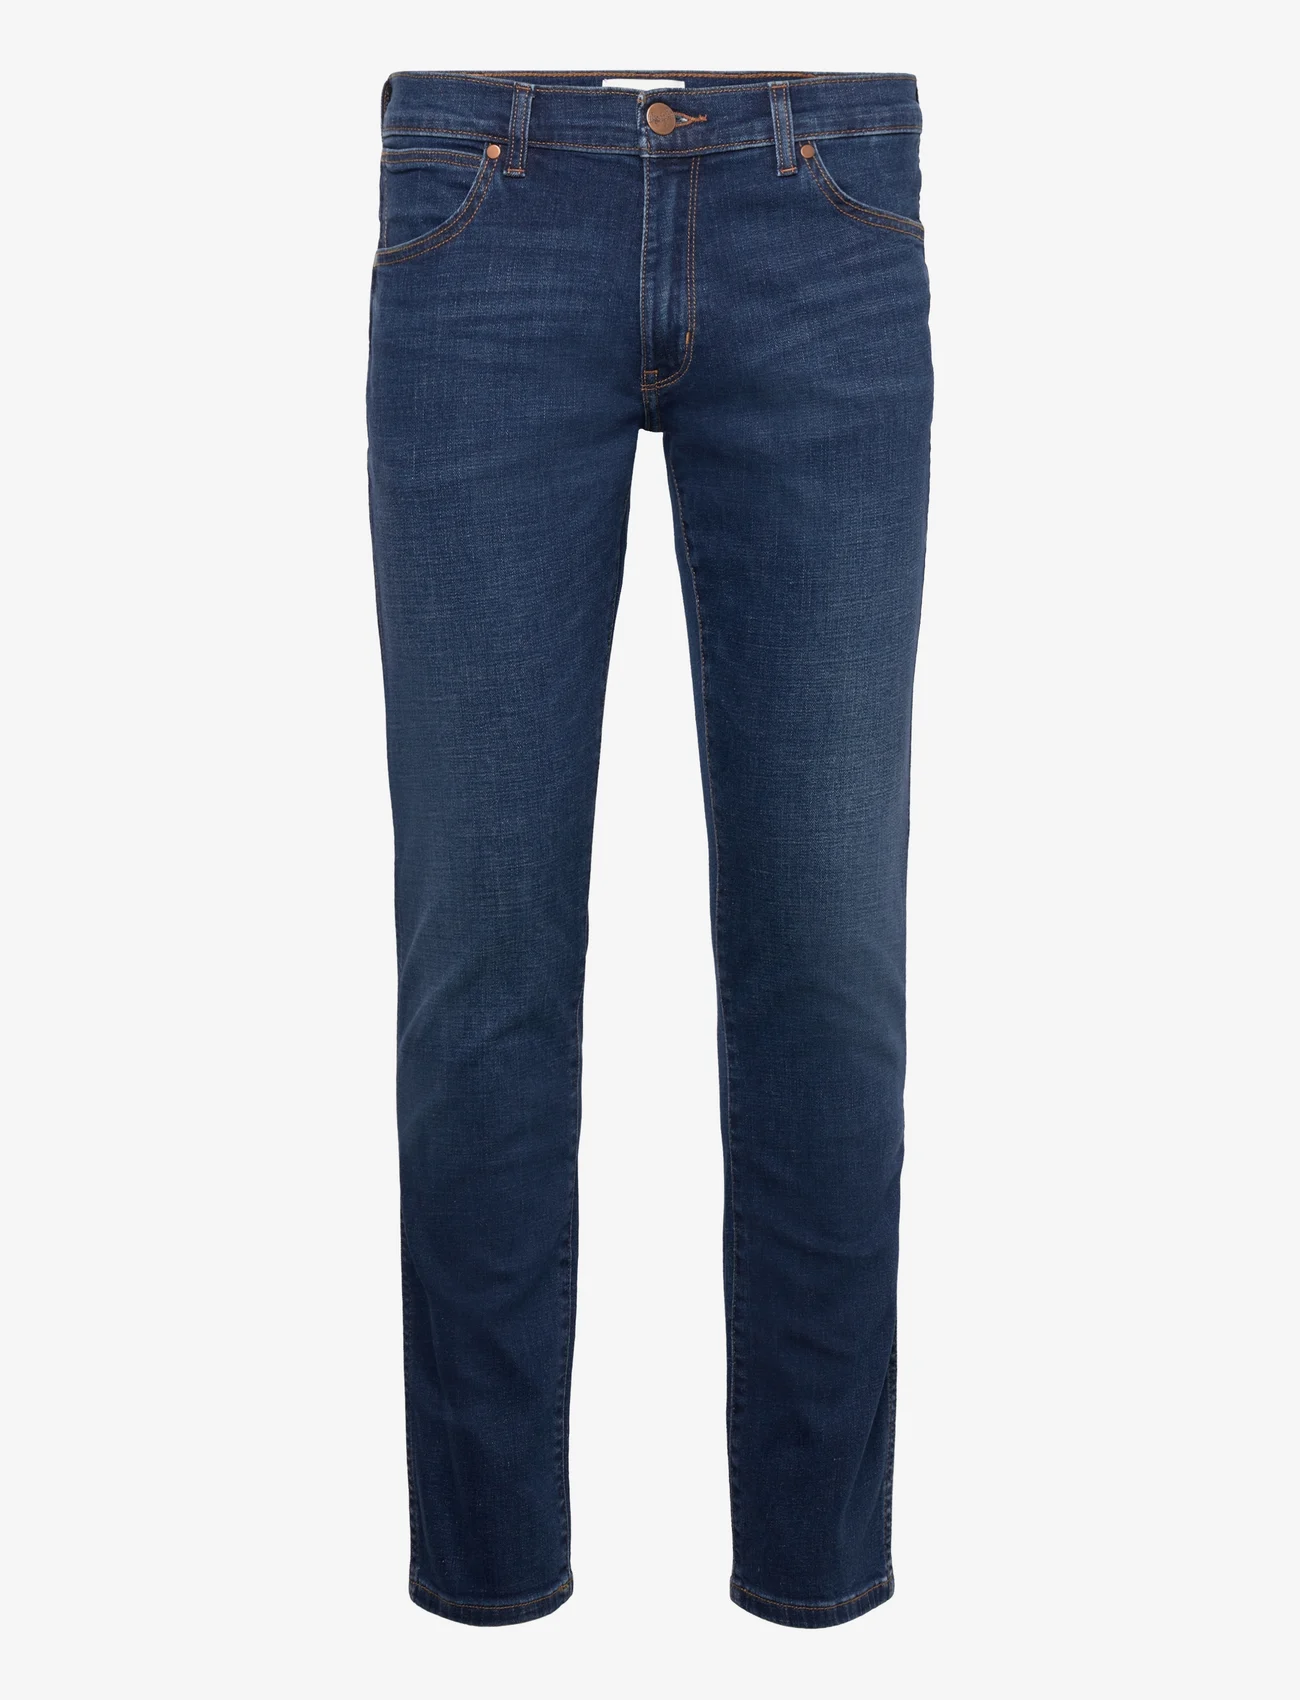 Wrangler - LARSTON - slim jeans - for real - 0